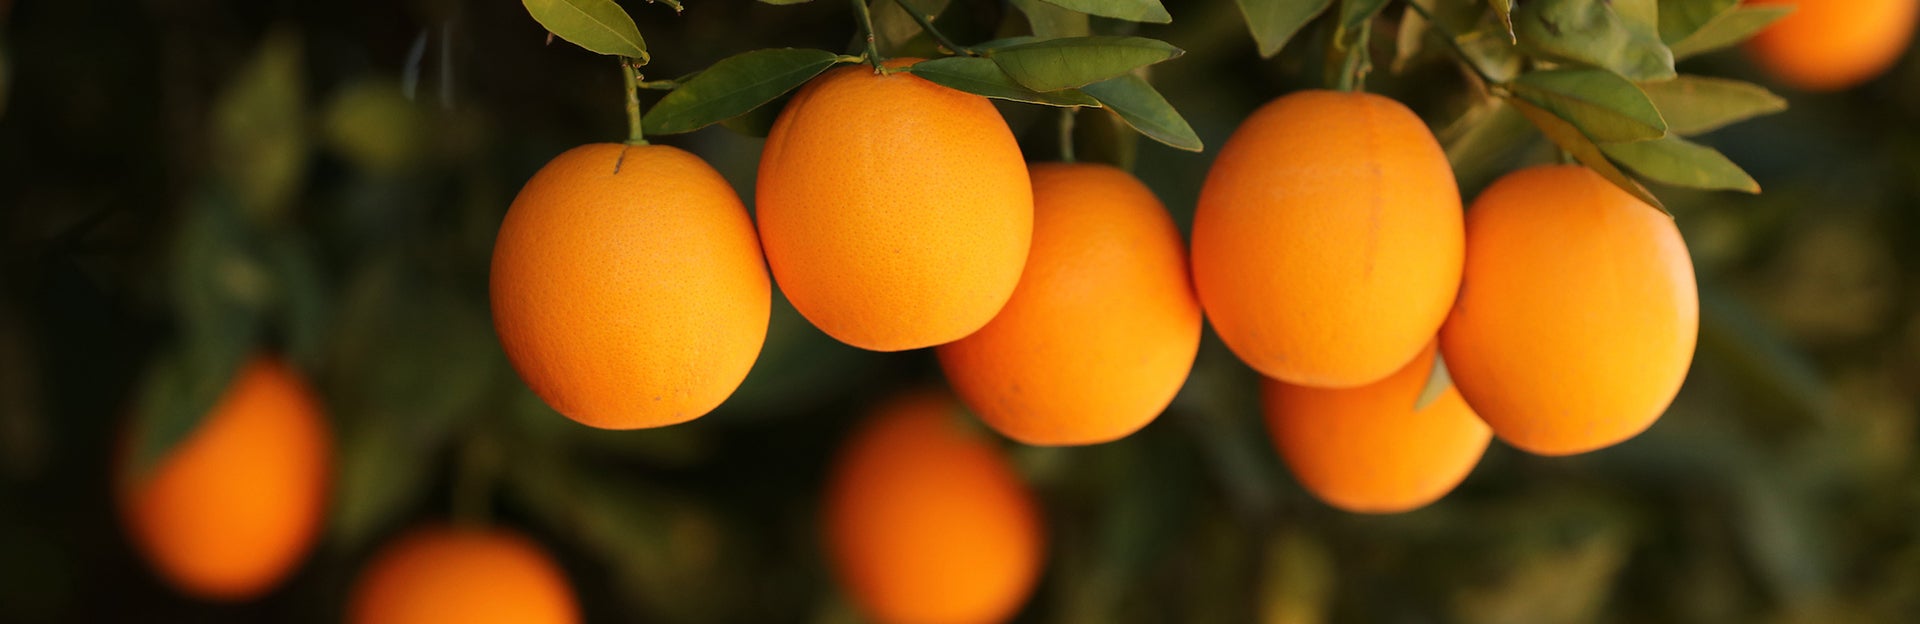 Oranges hanging in tree (c) UCR/Stan Lim